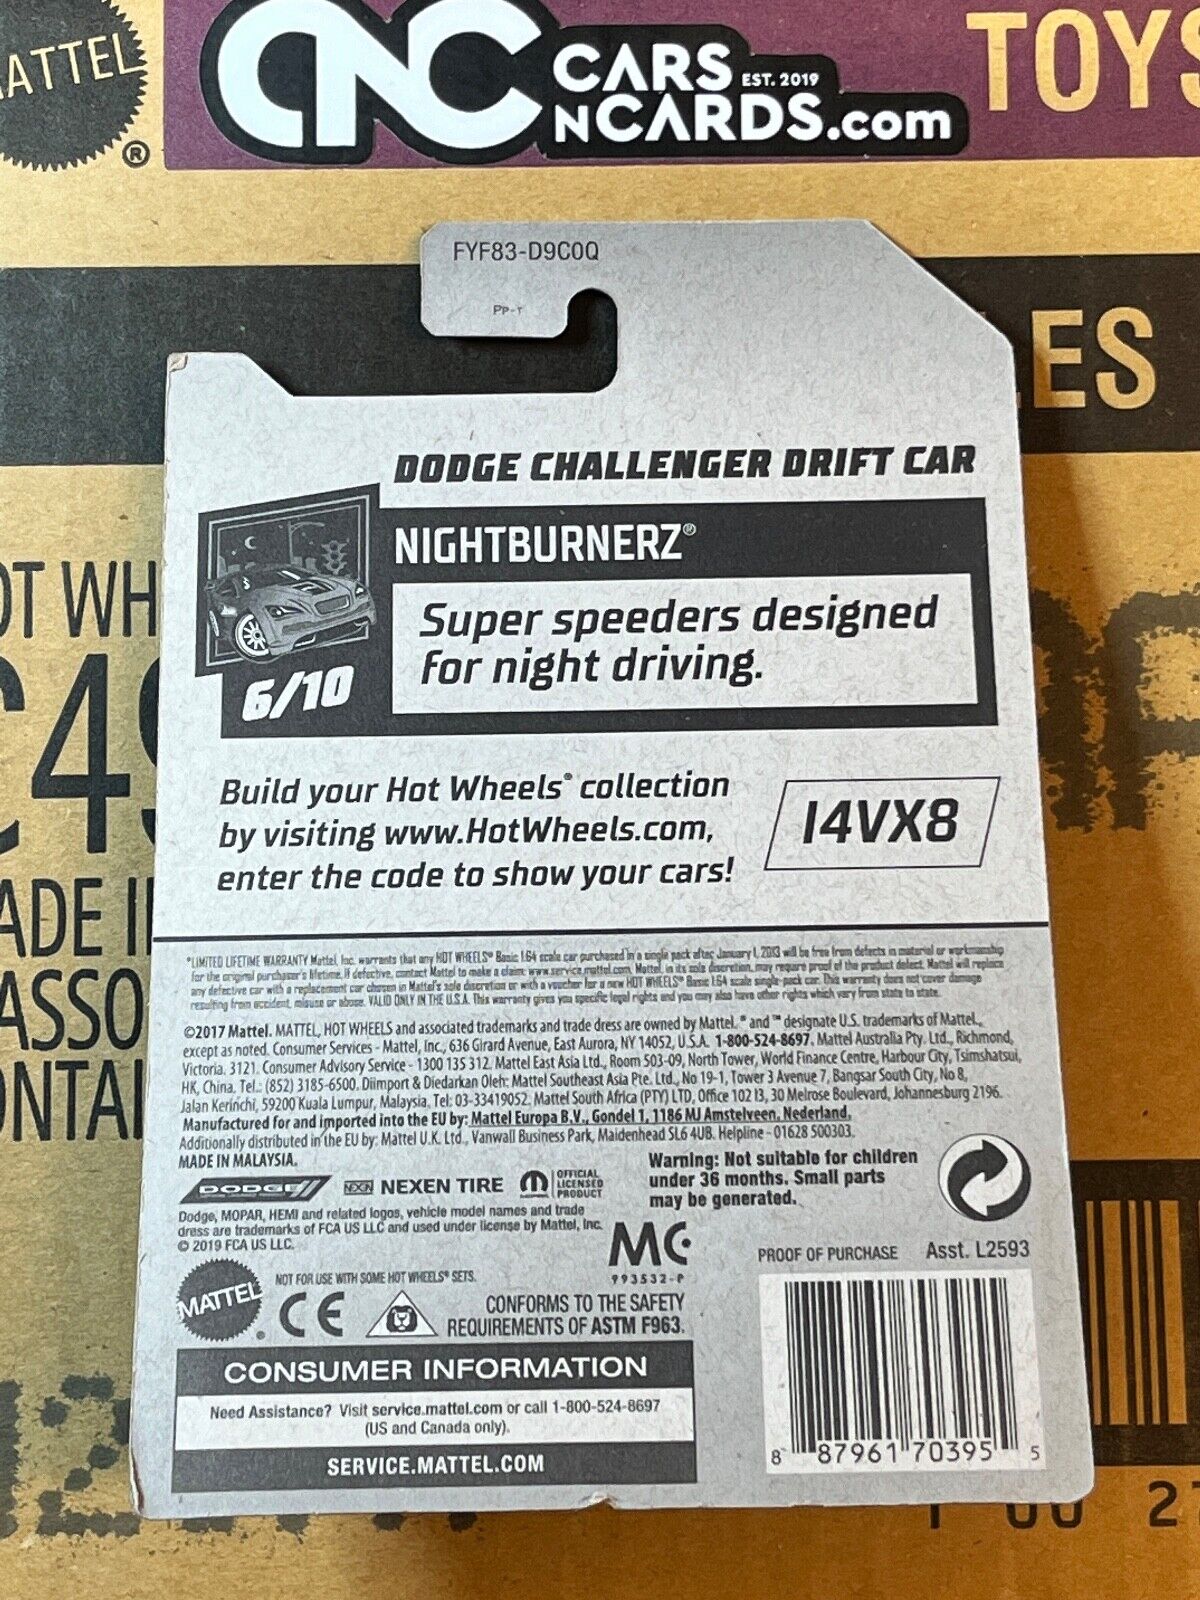 Dodge Challenger Drift Car - 179-2019